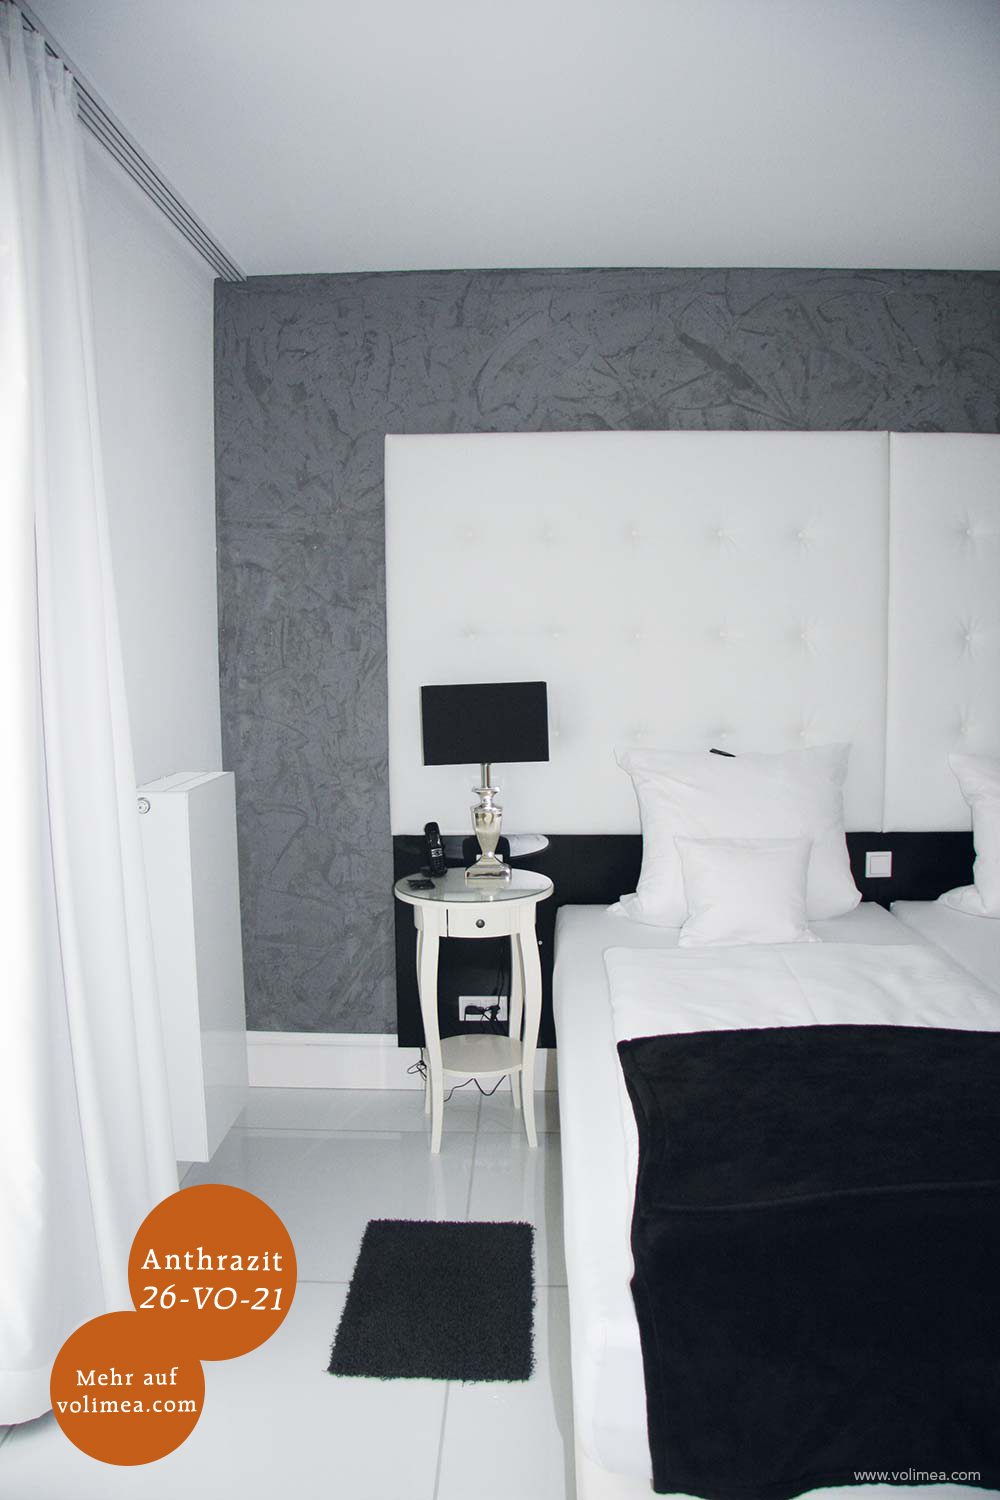 Mikrozement fugenlose Volimea Wandbeschichtung in einem Hotel - Edelweiss 26-VO-21